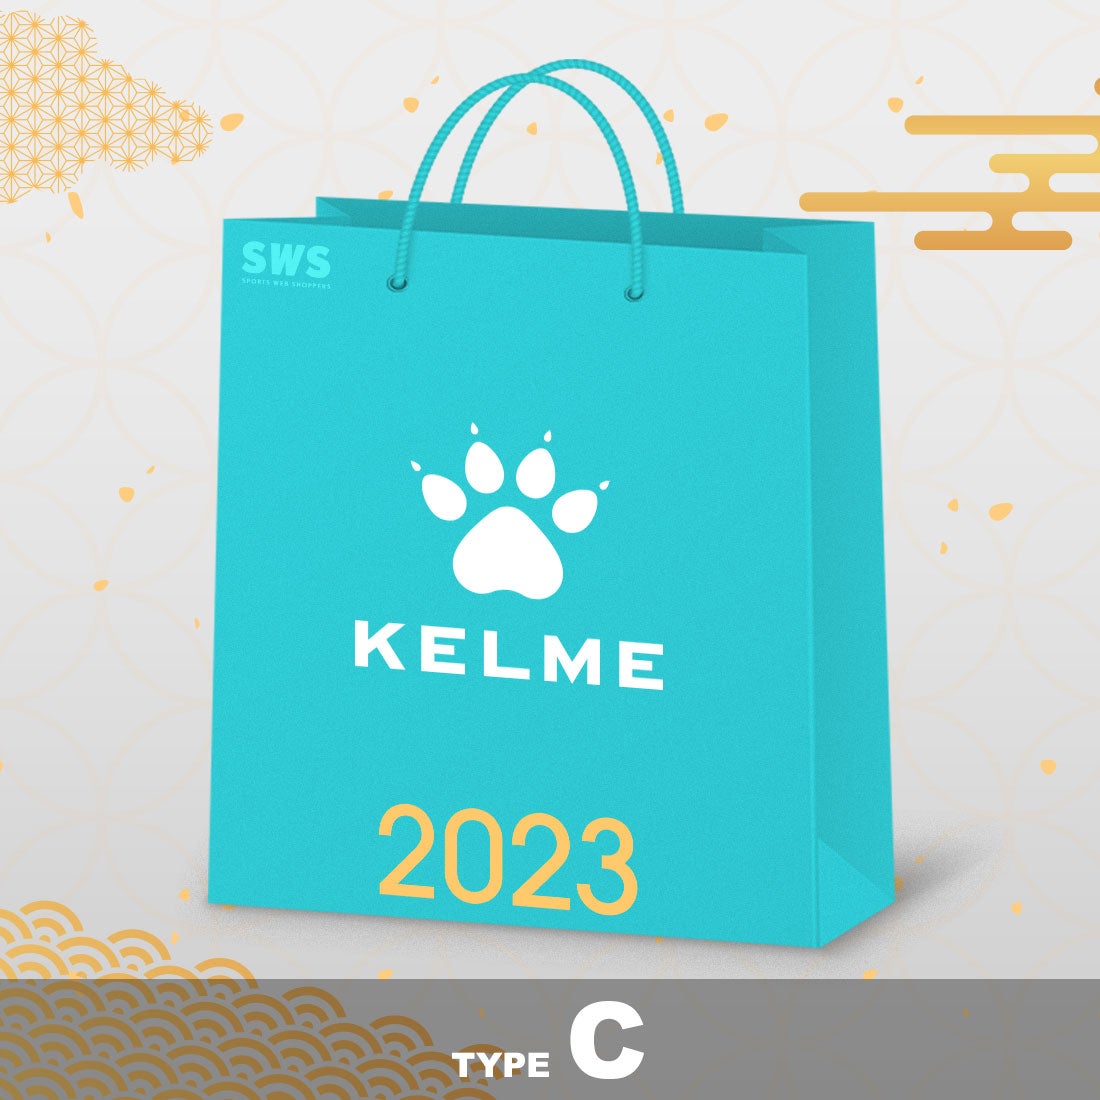 KELME ケルメ 福袋 2023(Cタイプ) KF23830 サッカーグッズ -サッカーショップ【SWS】